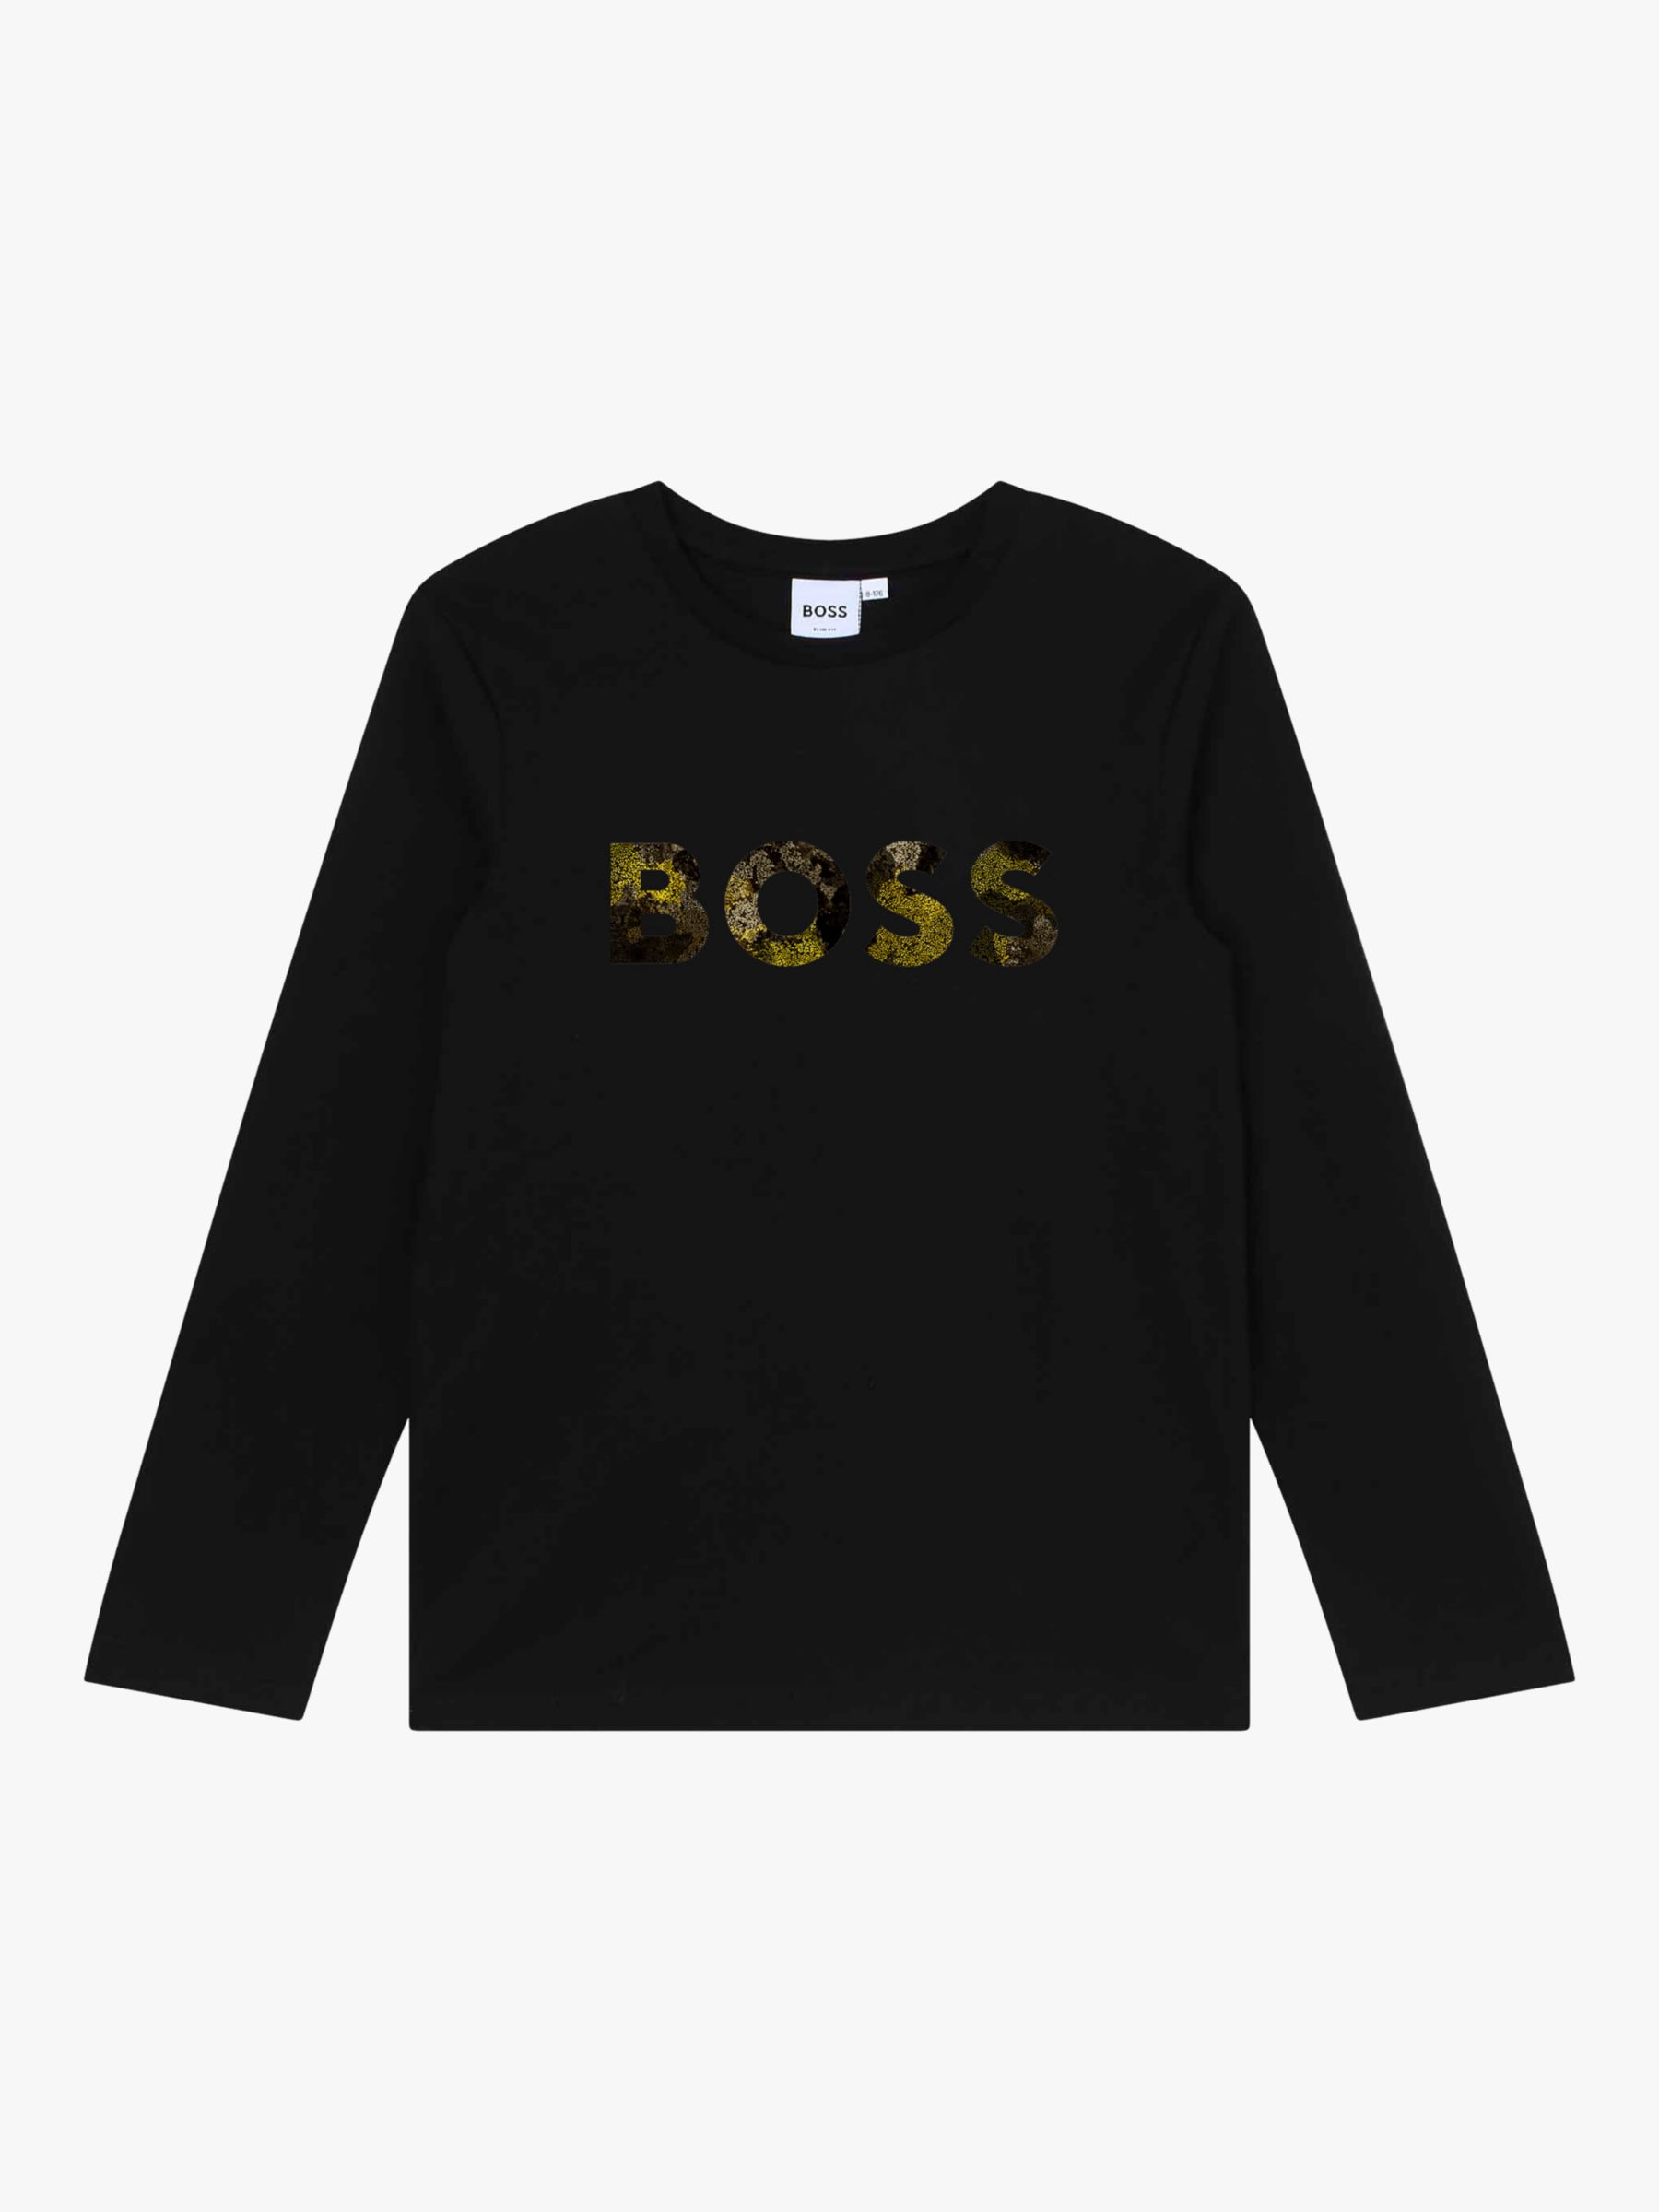 BOSS Kids' Fancy Logo Long Sleeve T-Shirt, Black/Multi, 4 years